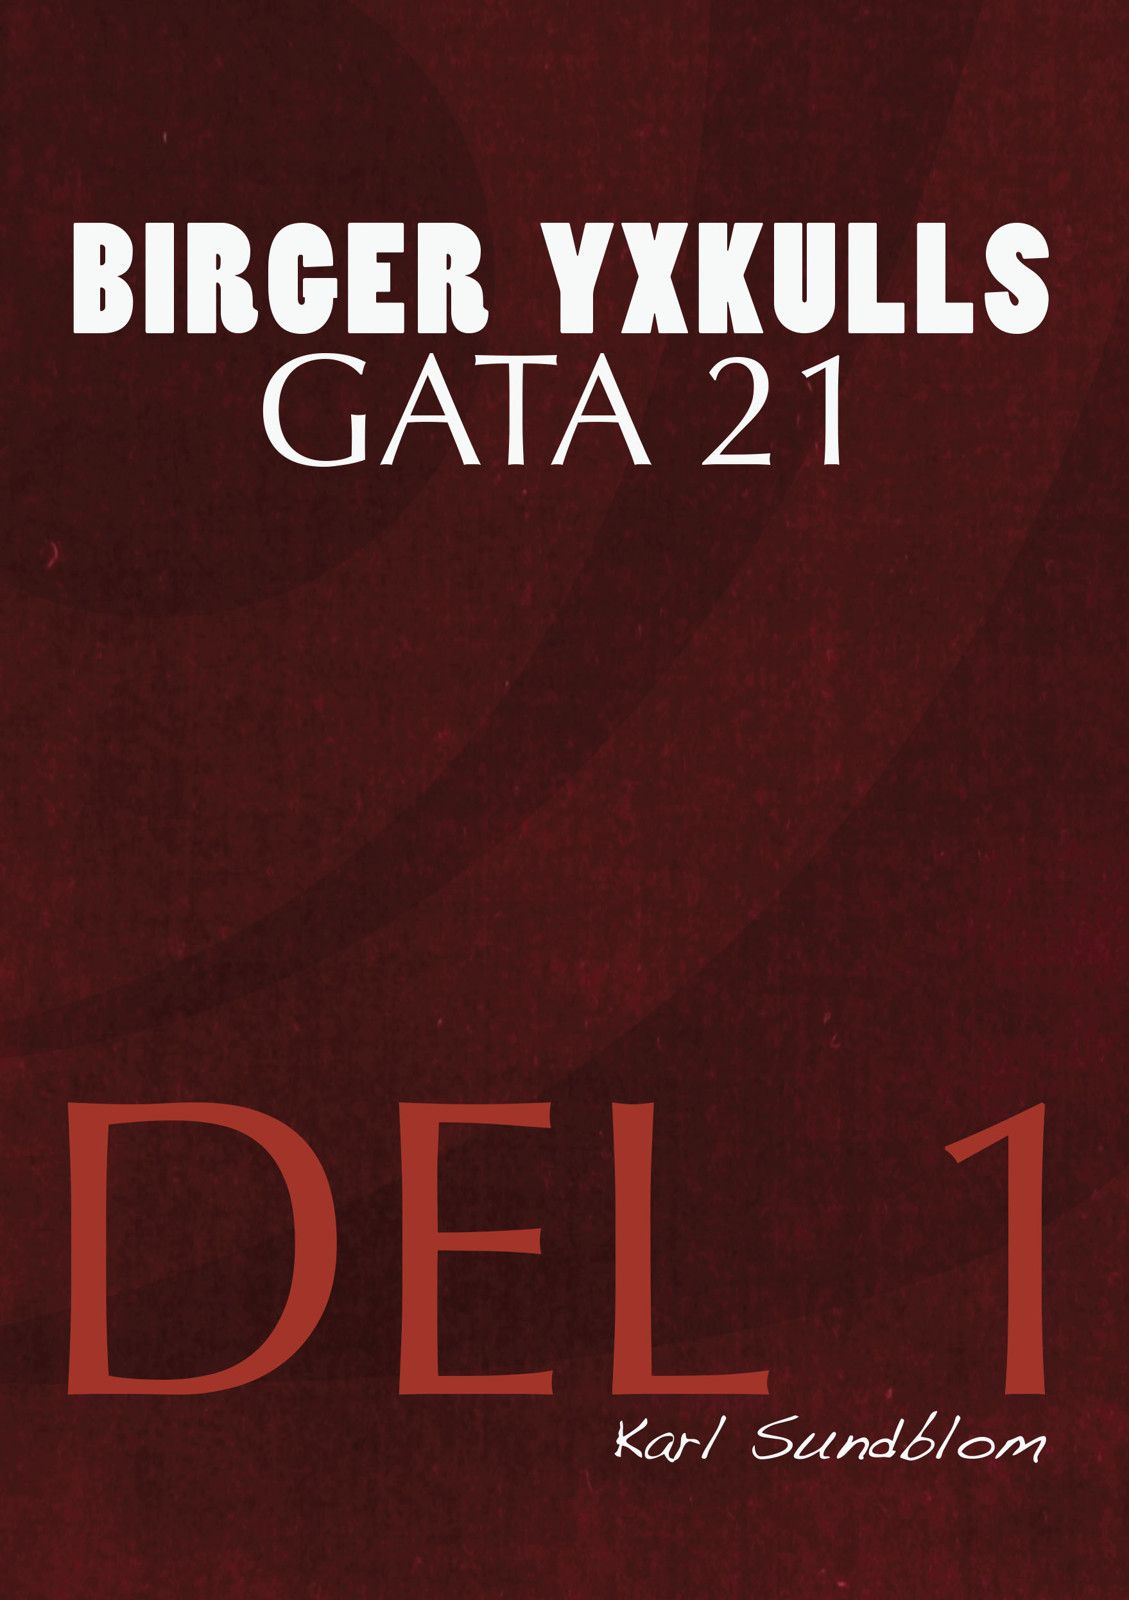 BIRGER YXKULLS GATA 21, DEL 1, e-bog af Karl Sundblom